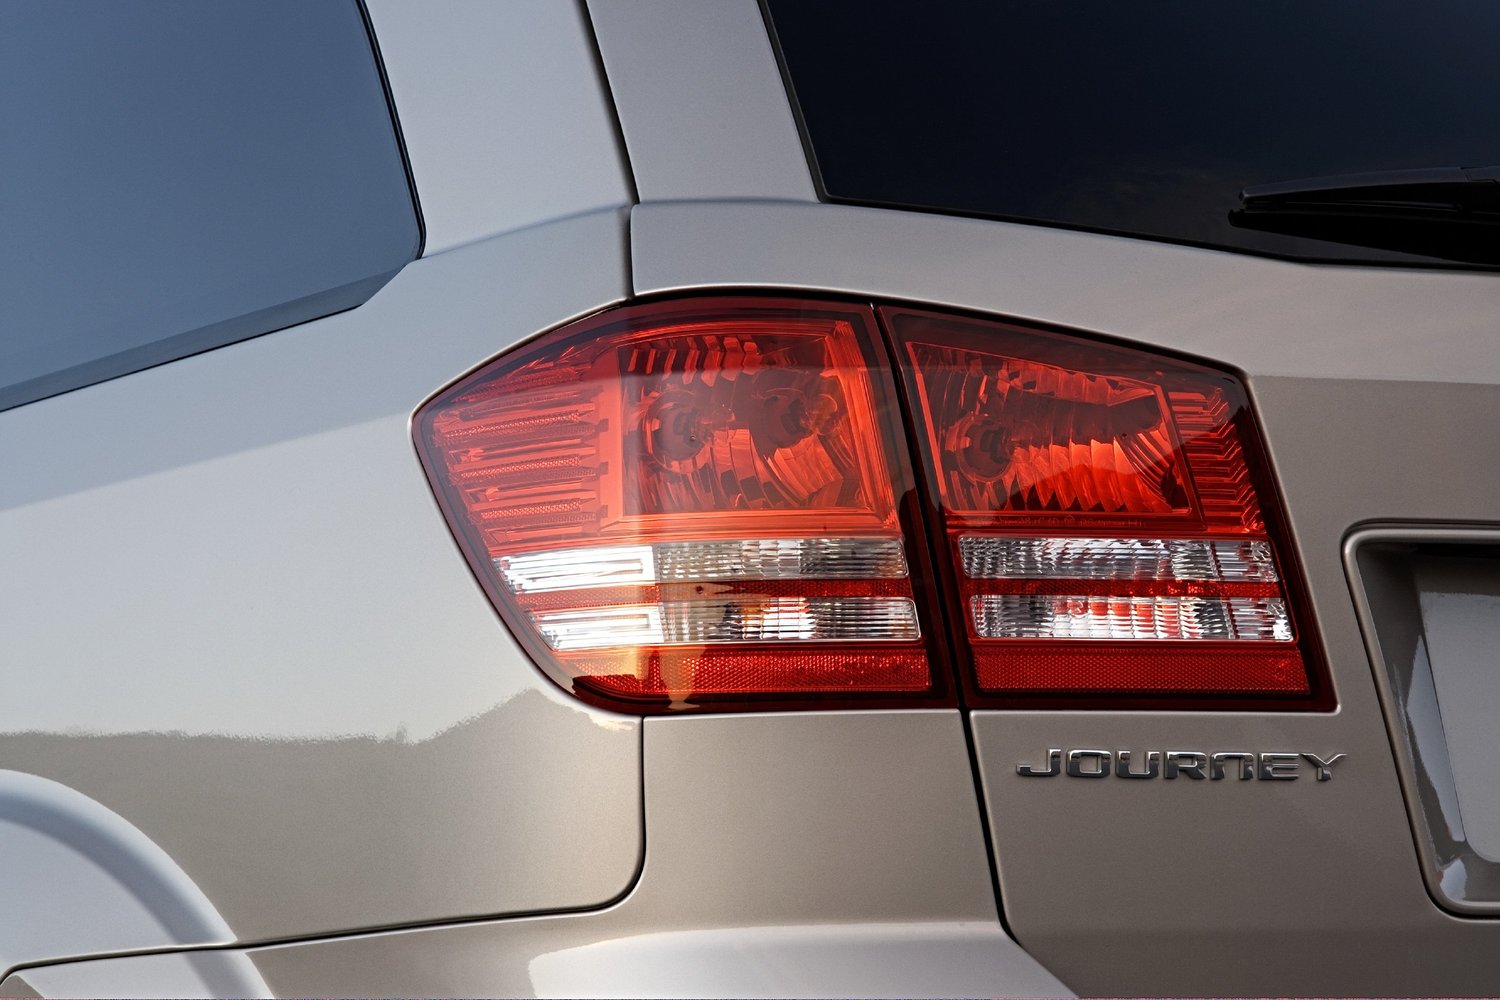 кроссовер Dodge Journey 2008 - 2016г выпуска модификация 2.4 AT (175 л.с.)